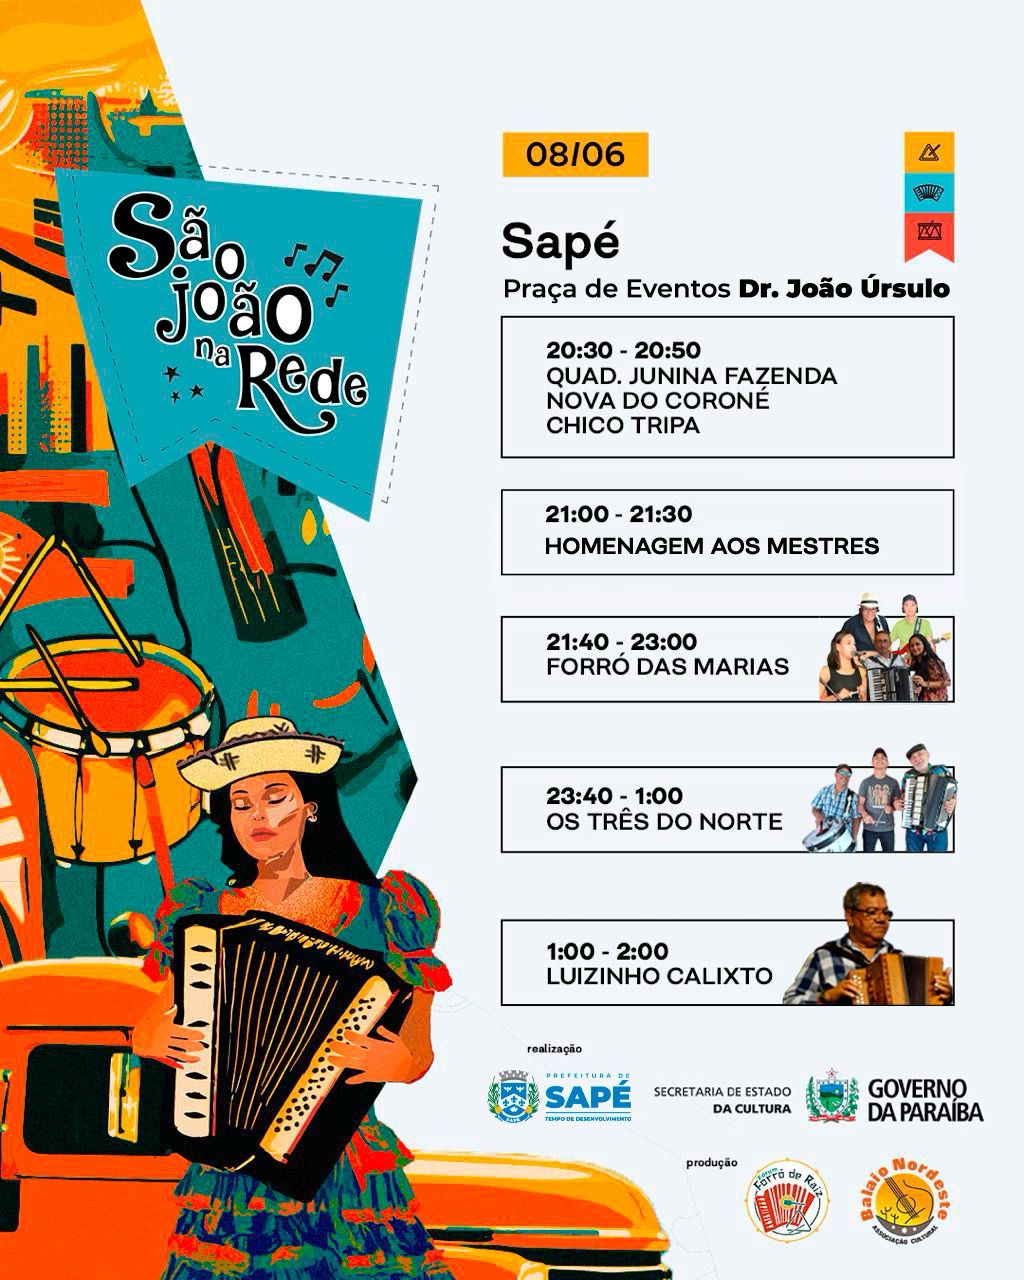 Sapé recebe Festival São João com ‘Caminhão do Forró” neste sábado